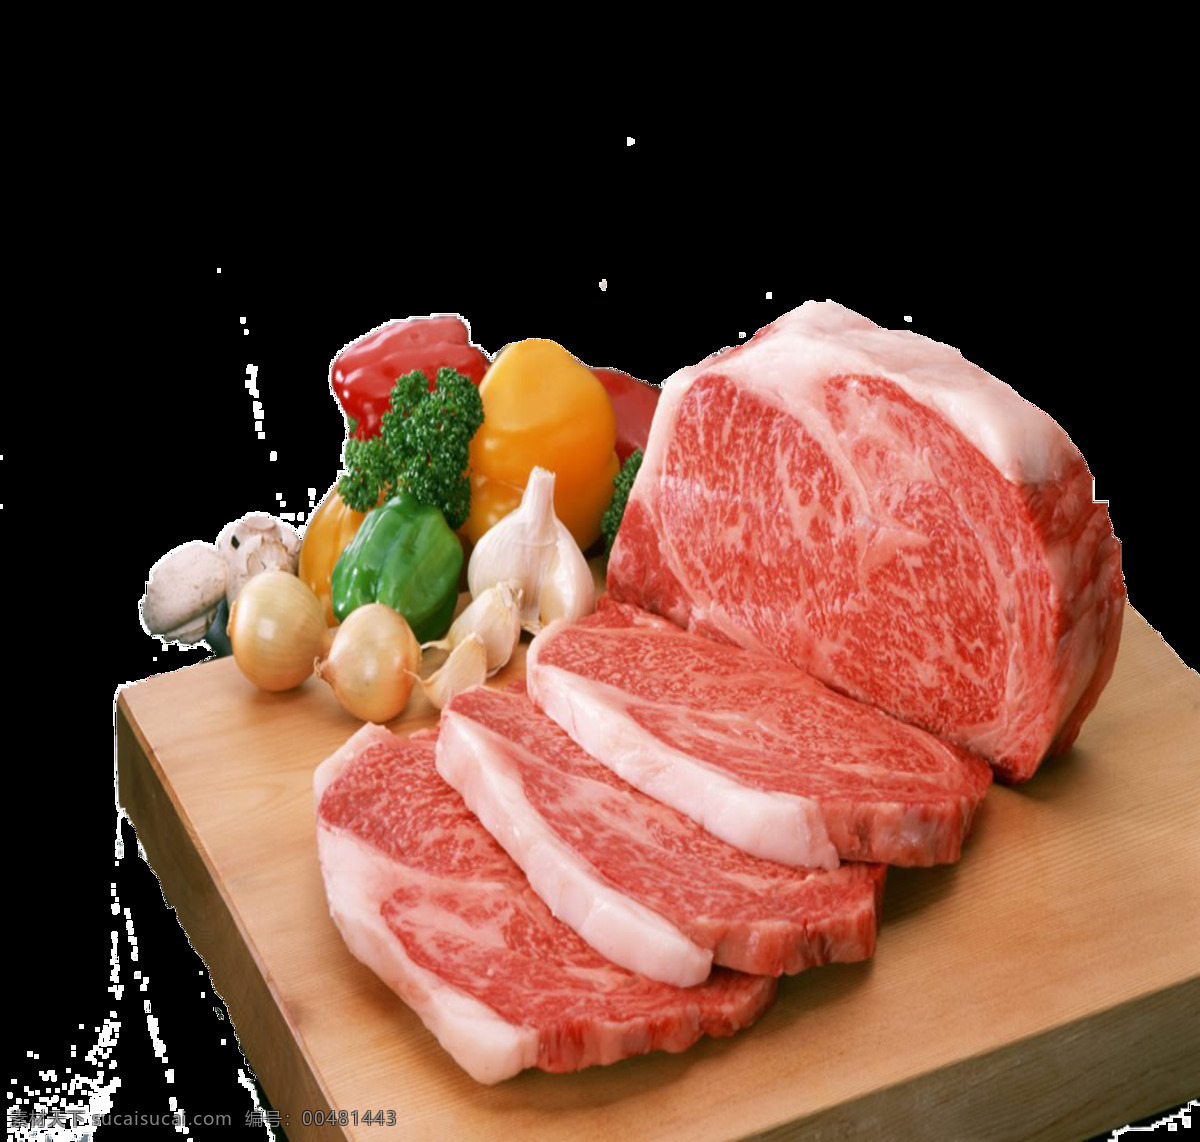 大块 新鲜 肉类 食 材 集合 美食 美味 营养 健康 食品 好吃 原材料食物 生肉 食物原料 新鲜生肉 木板案板